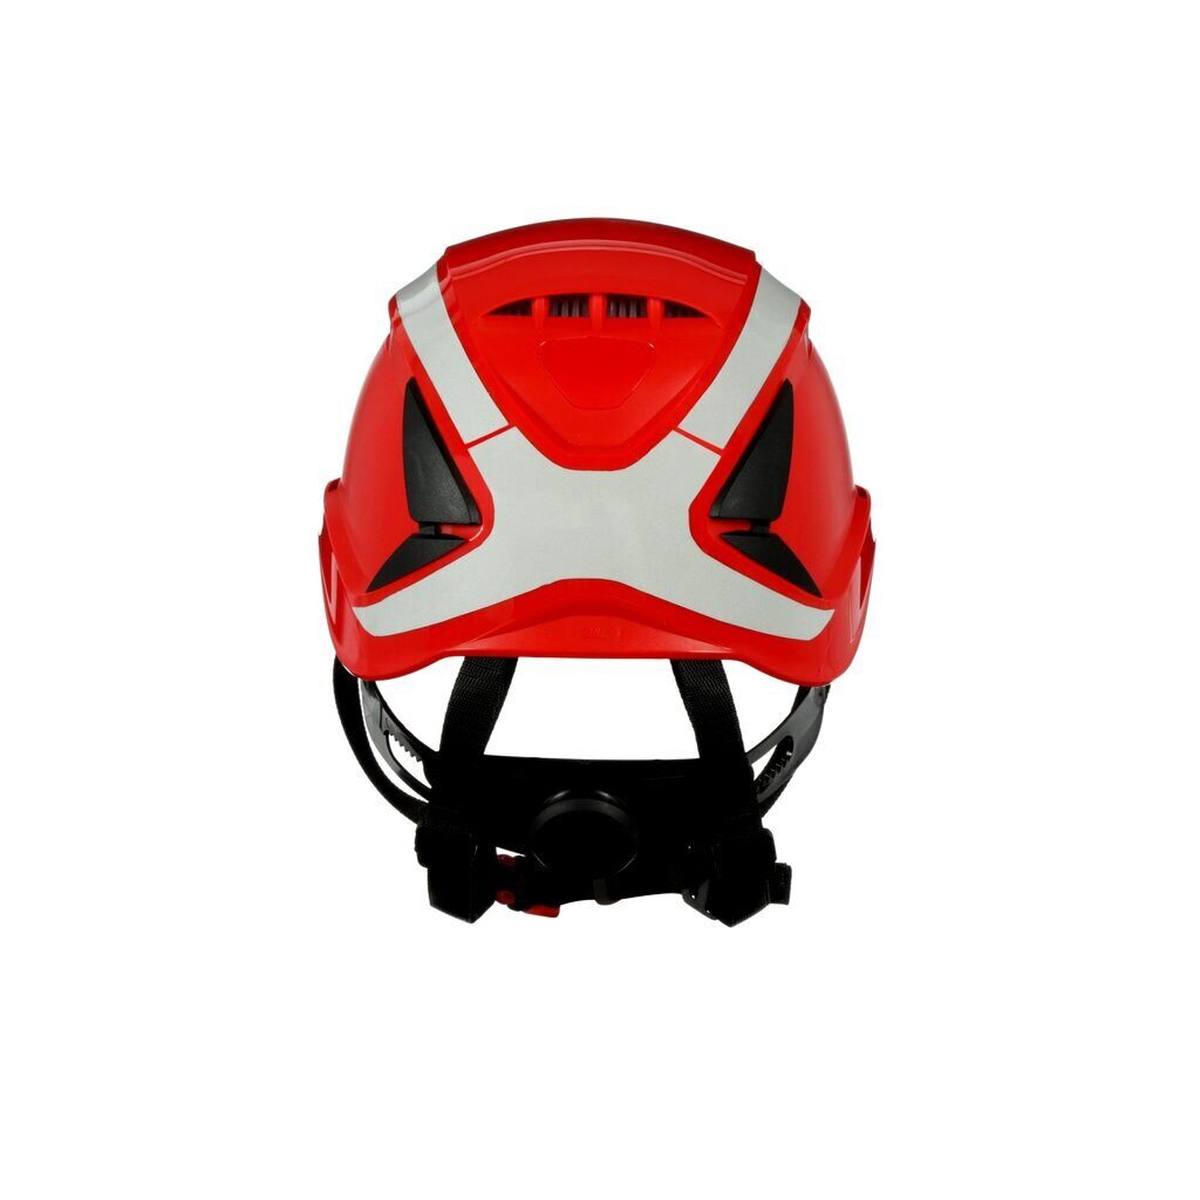 3M SecureFit safety helmet, X5005V-CE, red, ventilated, reflective, CE